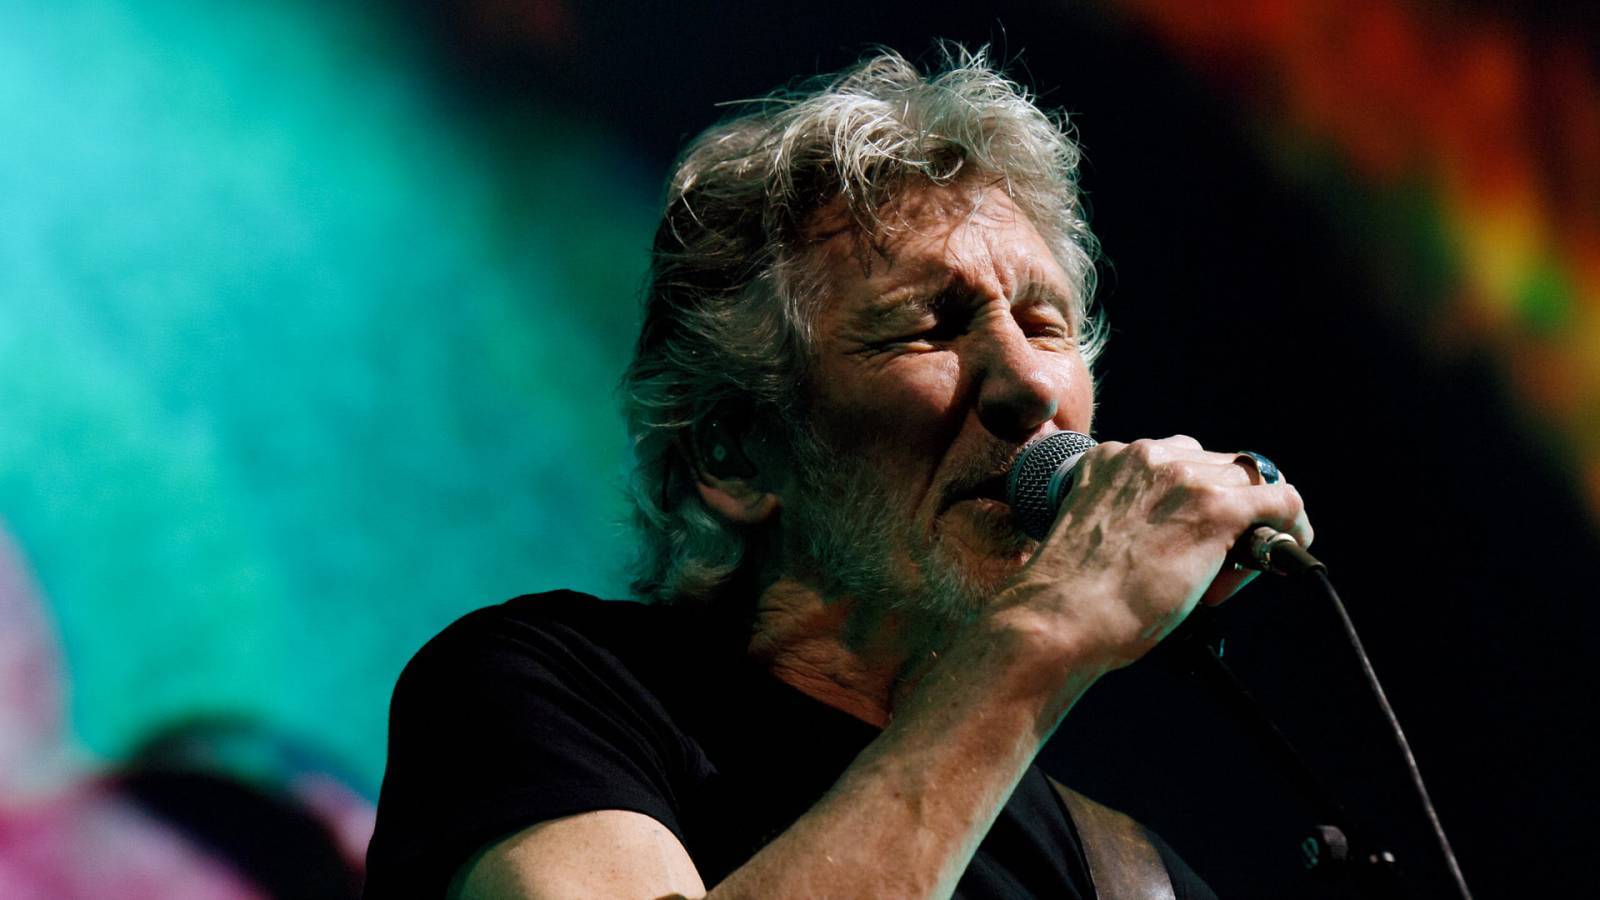 Roger Waters může ve Frankfurtu koncertovat. Soud zrušil zákaz vydaný kvůli muzikantovým postojům